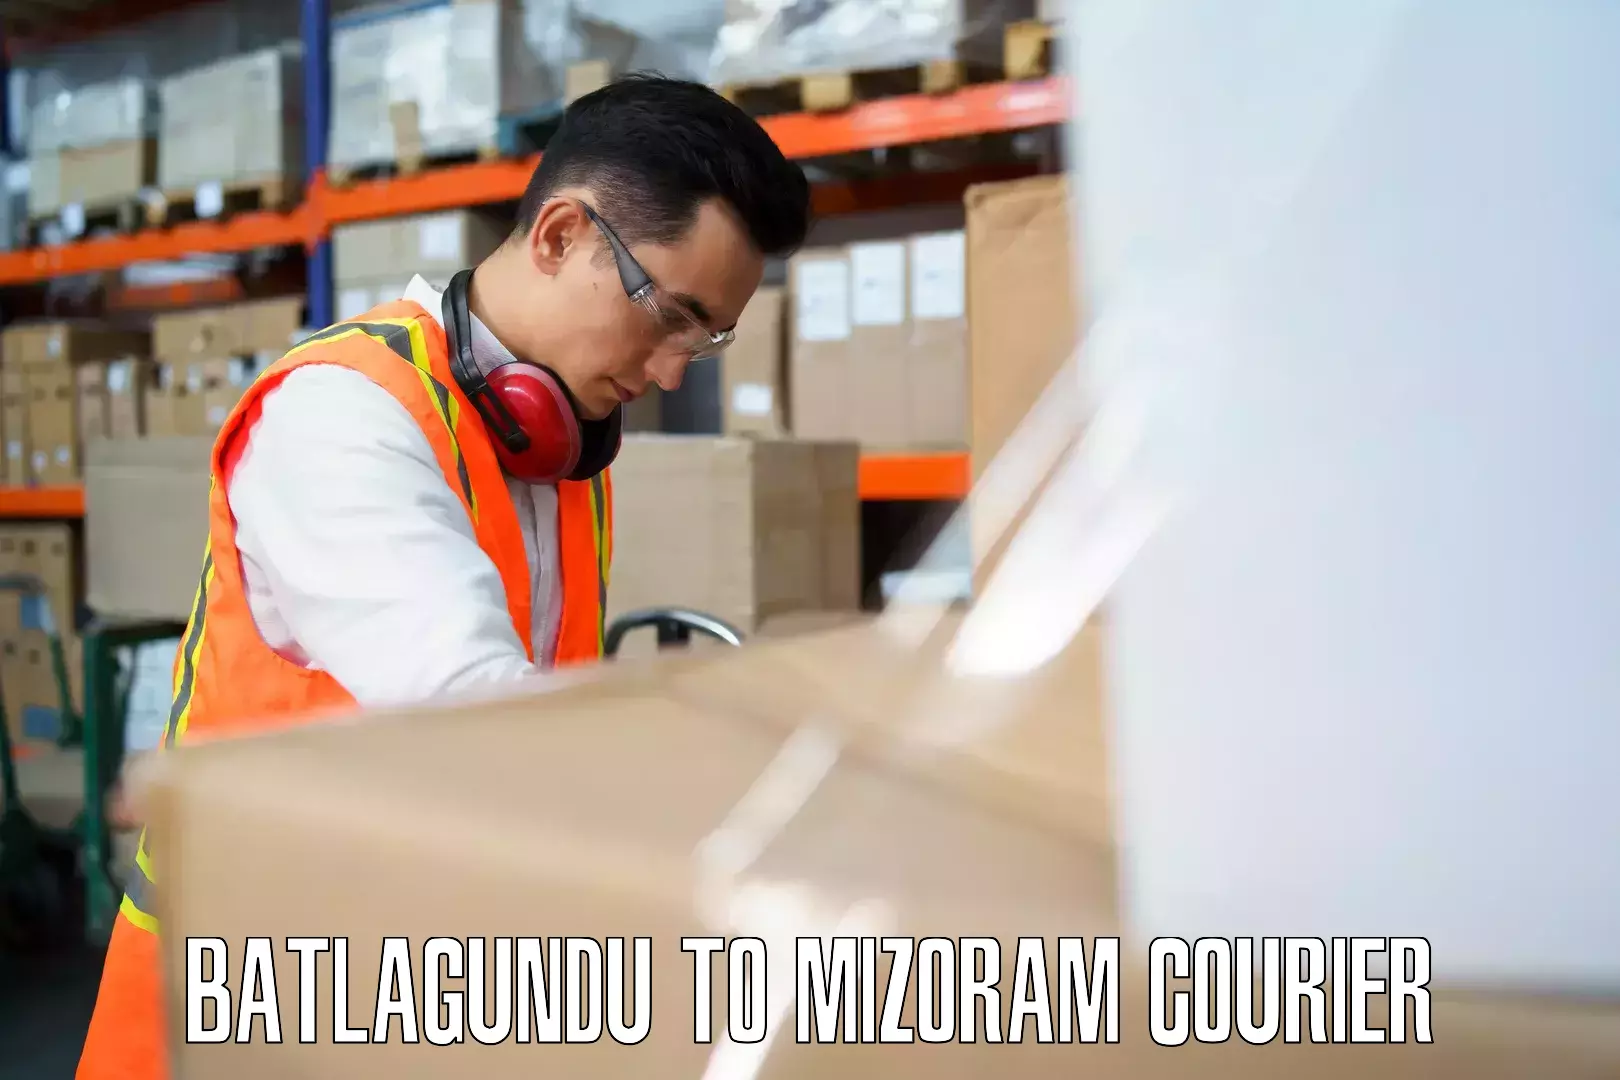 Personalized luggage shipping Batlagundu to Mizoram